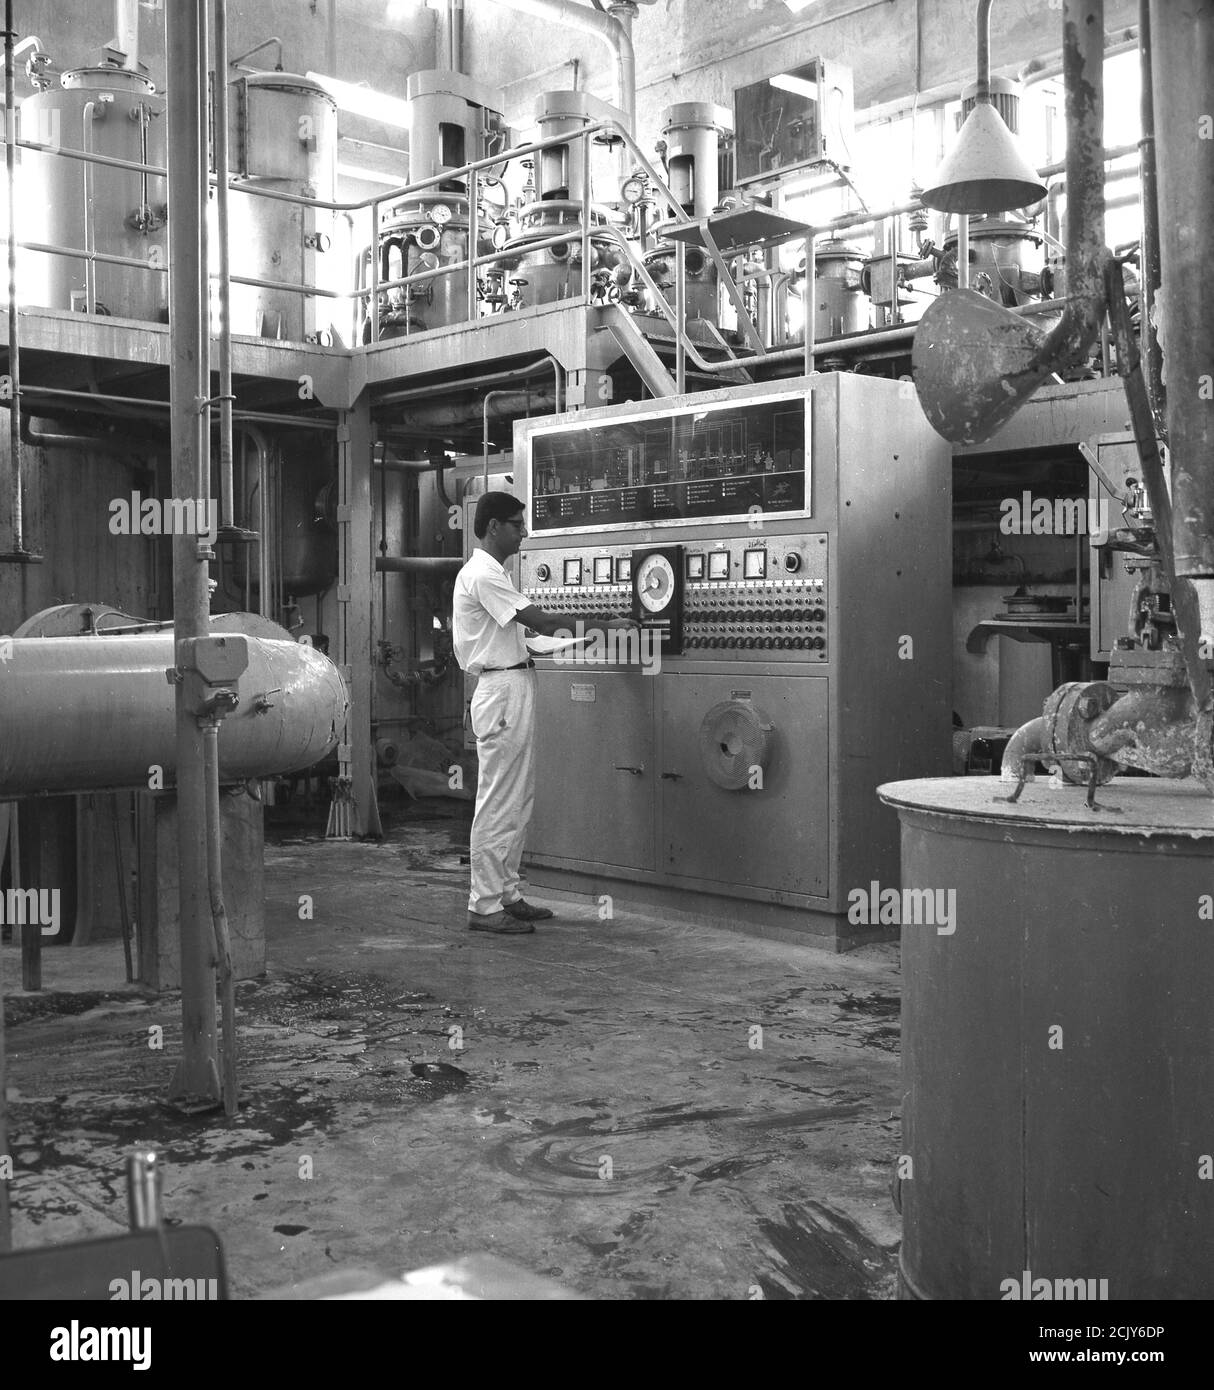 1960s, historique, homme opératif dans une unité de contrôle à l'intérieur d'un complexe industriel, éventuellement une usine d'engrais, Arabie Saoudite. Banque D'Images